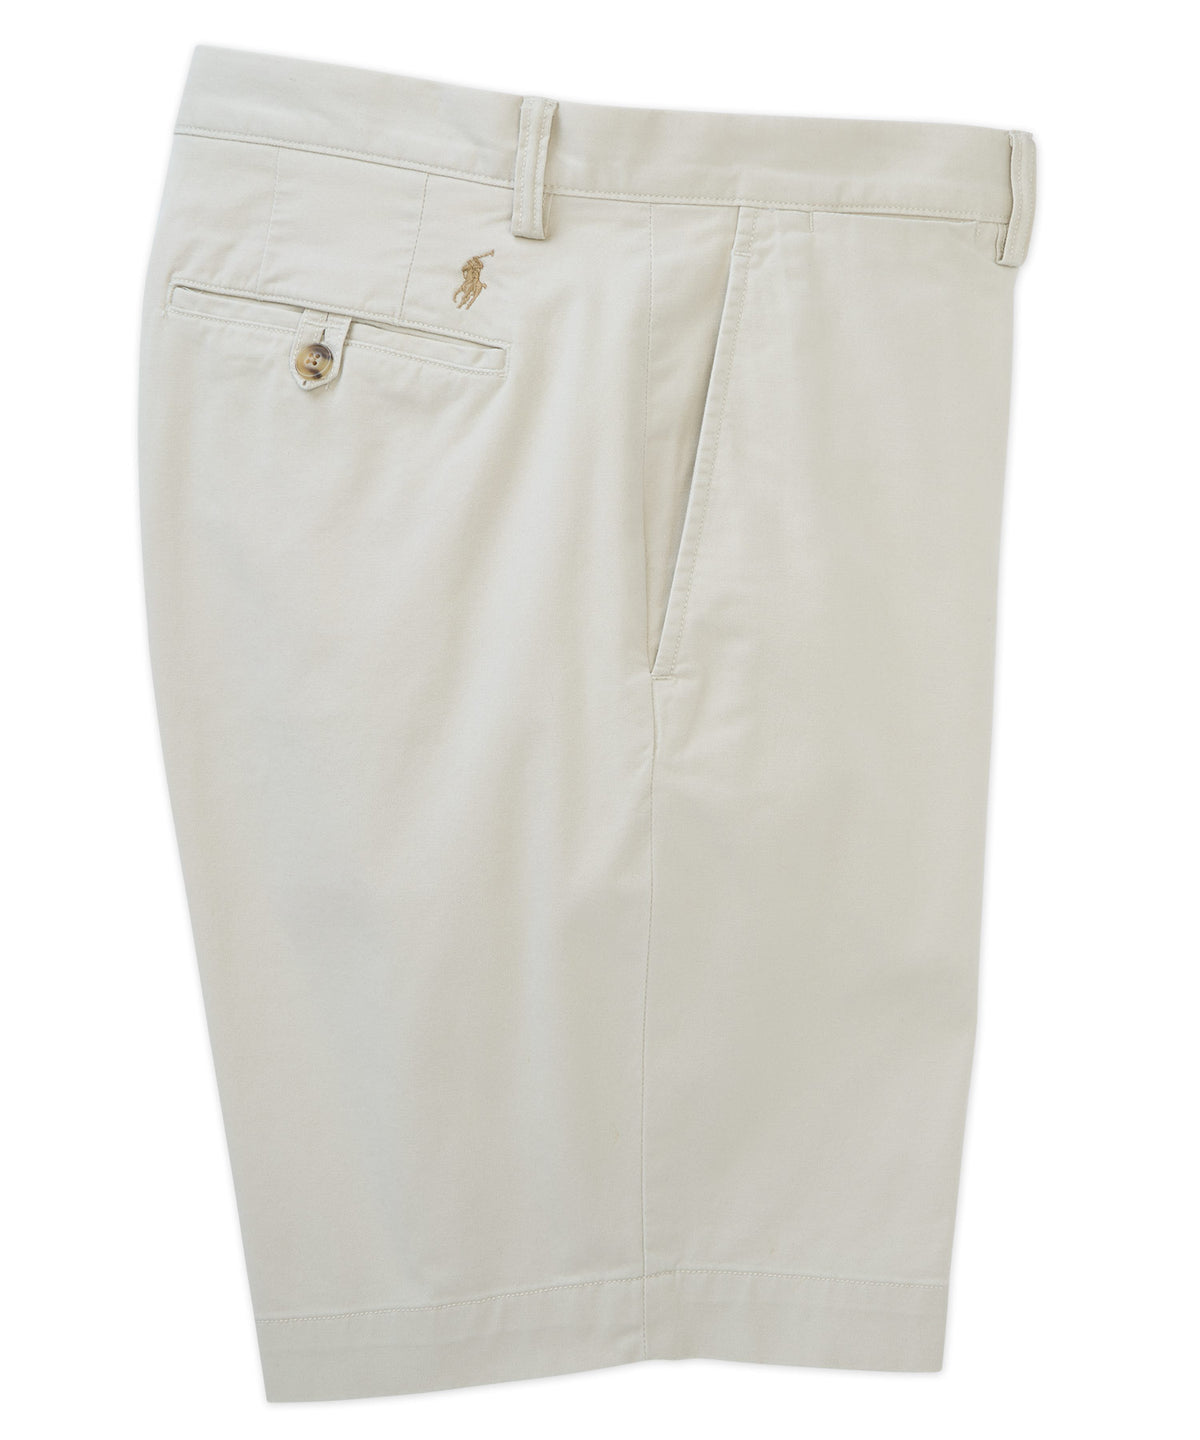 Pantaloncini chino piatti elasticizzati sul davanti Polo Ralph Lauren, Men's Big & Tall